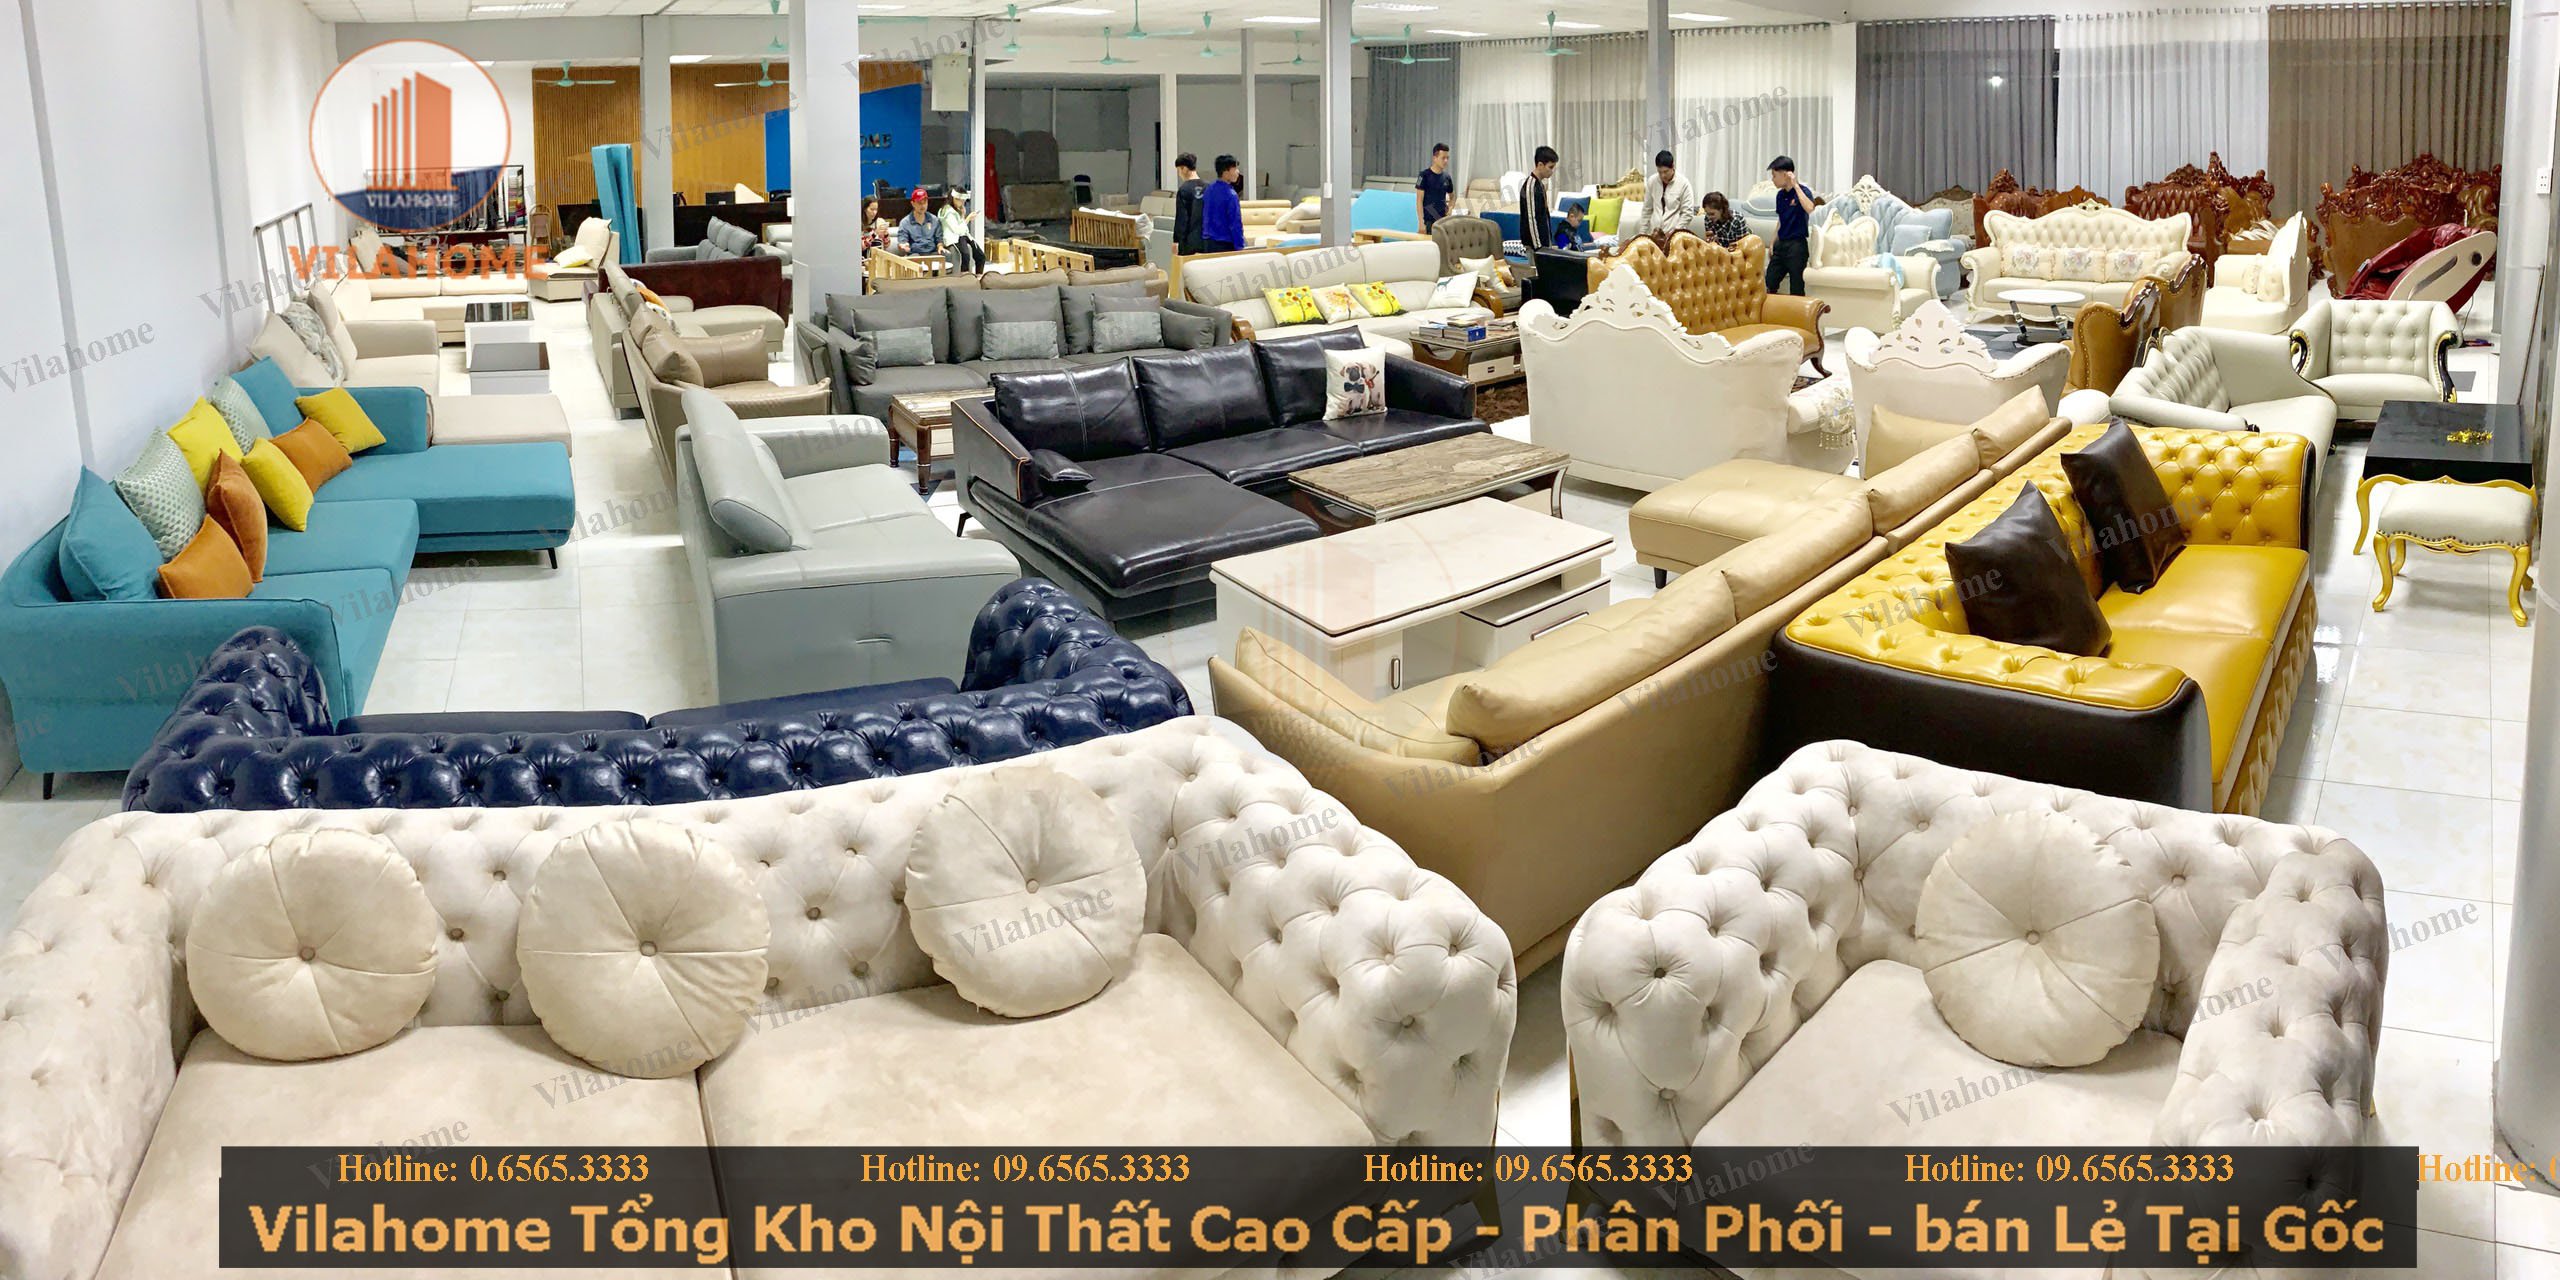 Sofa phòng khách tại Hà Nội: Bạn đang tìm kiếm sofa phòng khách tại Hà Nội? Đến với chúng tôi, bạn sẽ được trải nghiệm không gian sống tiện nghi và sang trọng với những bộ sofa đẹp và chất lượng từ các thương hiệu nổi tiếng. Hãy ghé thăm cửa hàng của chúng tôi ngay hôm nay để lựa chọn sản phẩm phù hợp với không gian và phong cách của bạn.